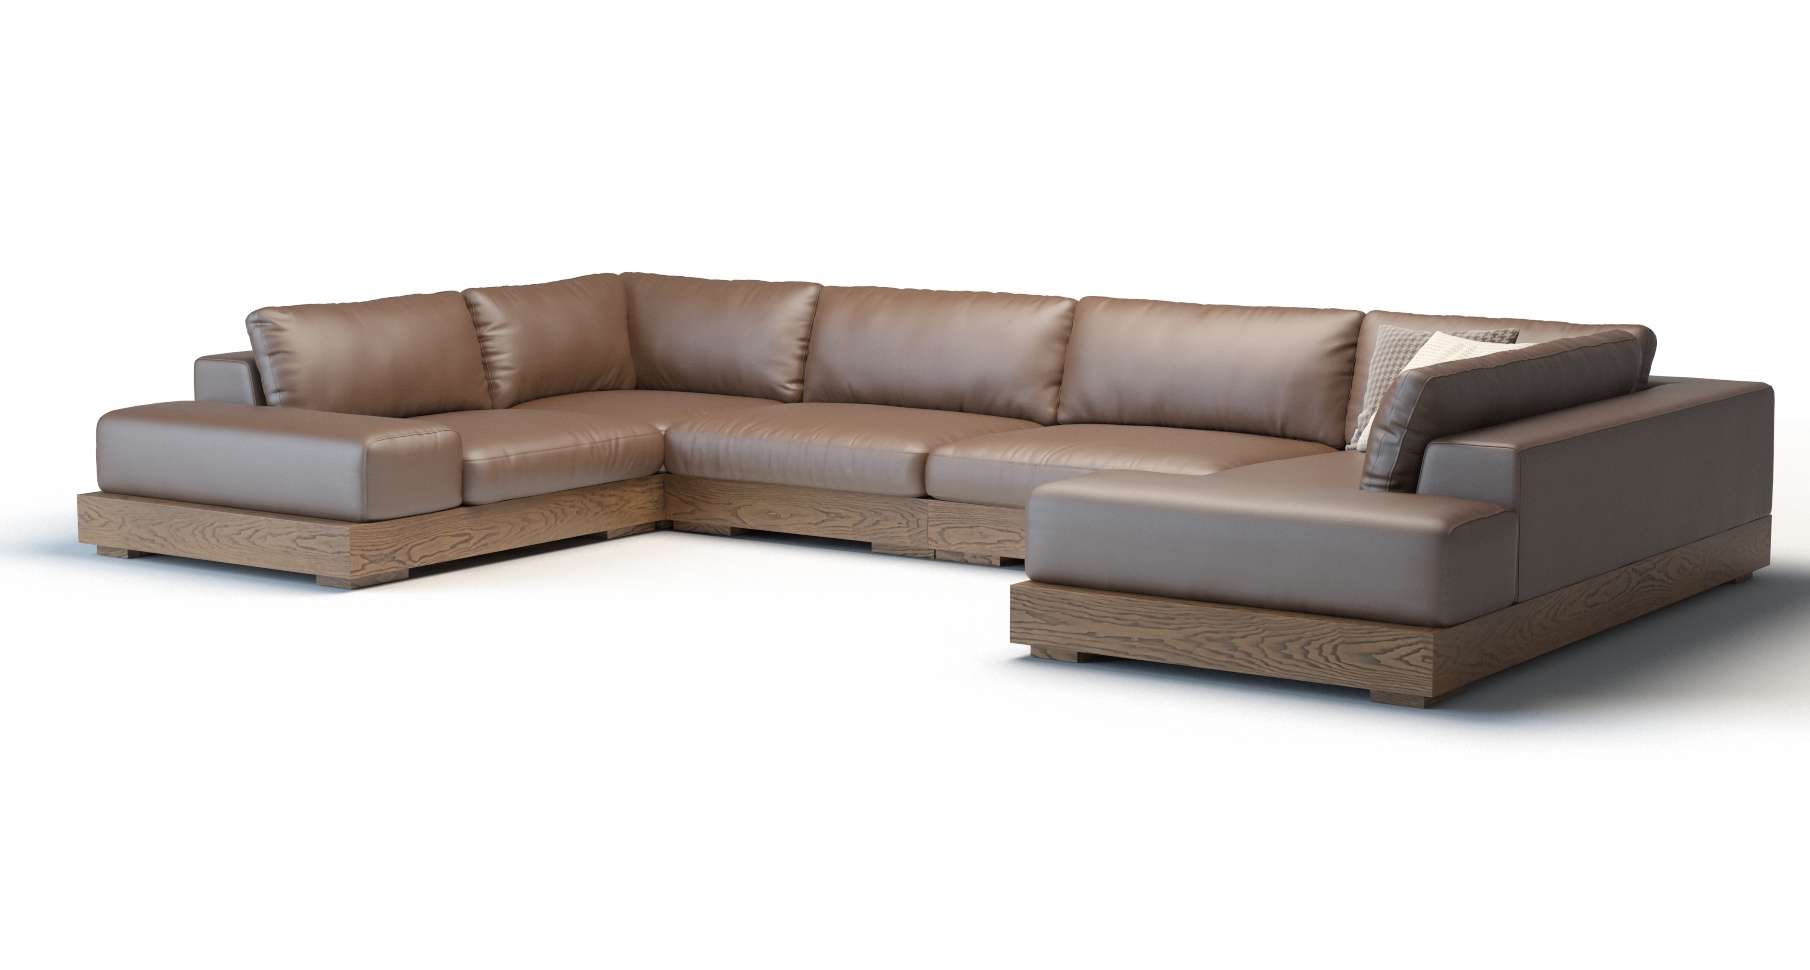 Appiani sofa